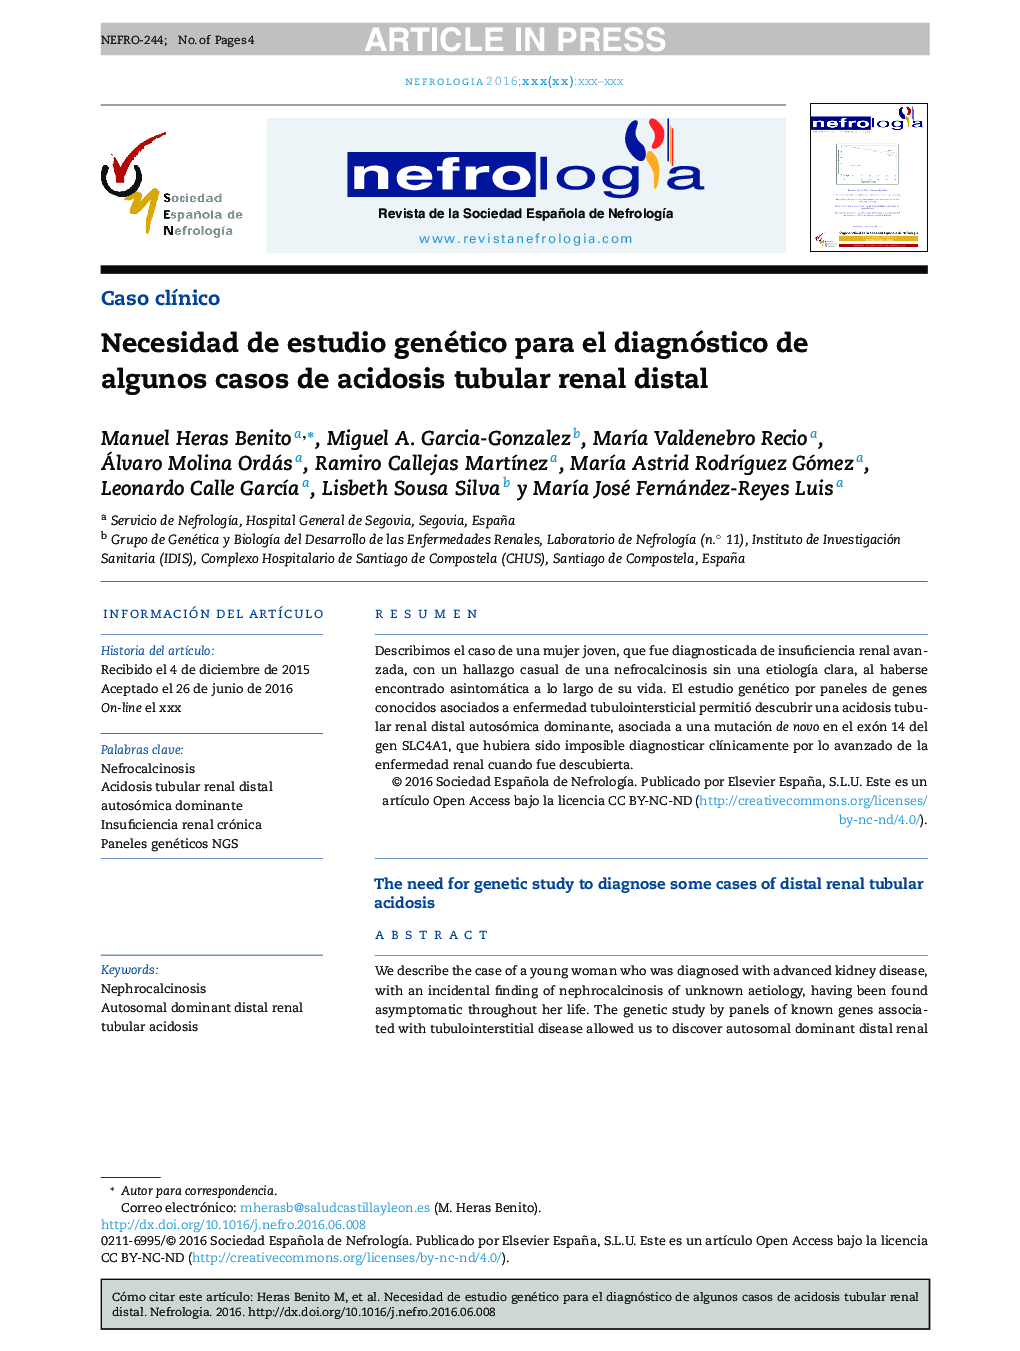 Necesidad de estudio genético para el diagnóstico de algunos casos de acidosis tubular renal distal